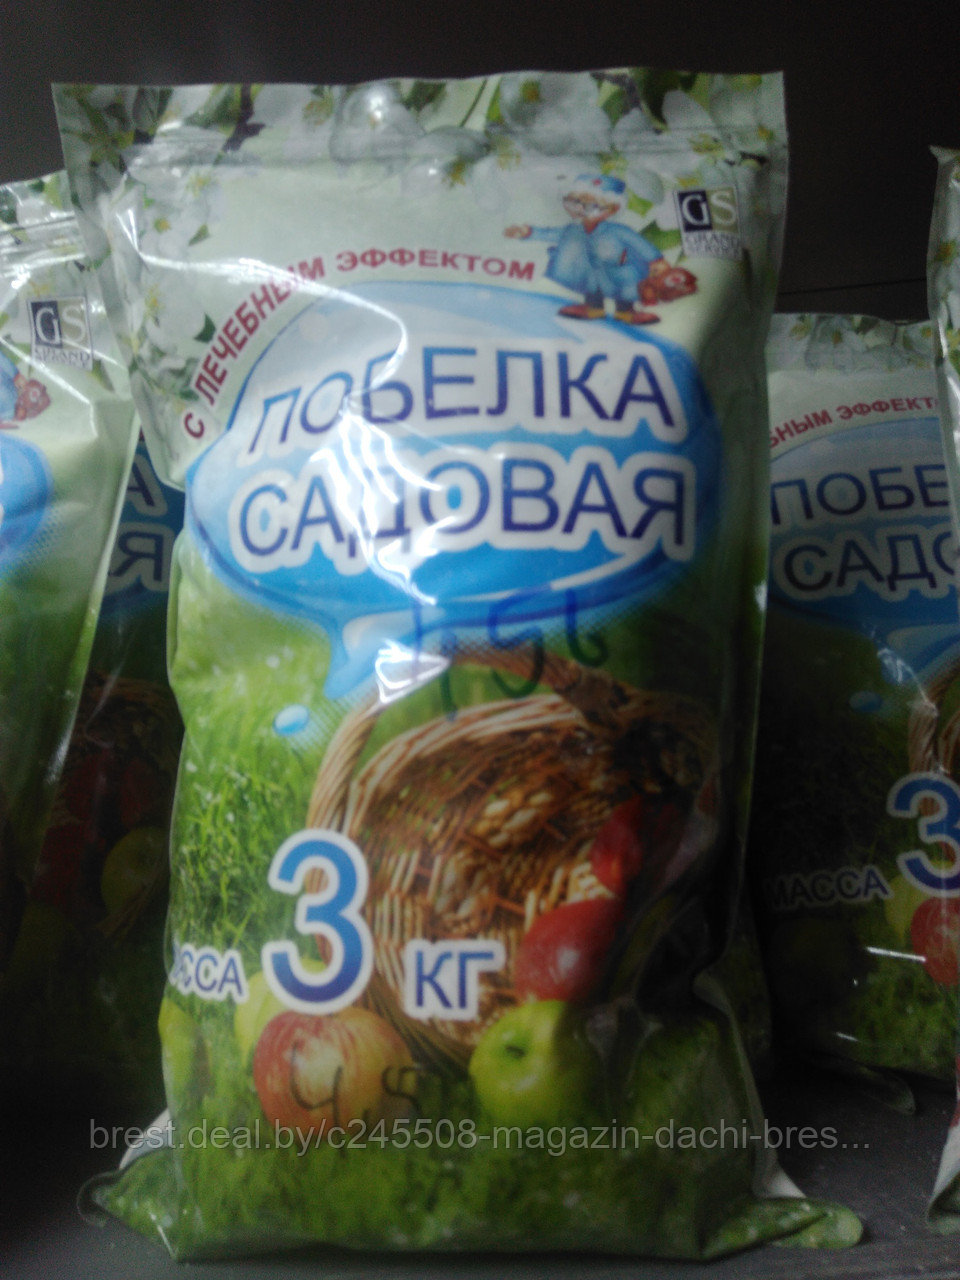 Побелка садовая с лечебным эффектом, 3 кг, Беларусь